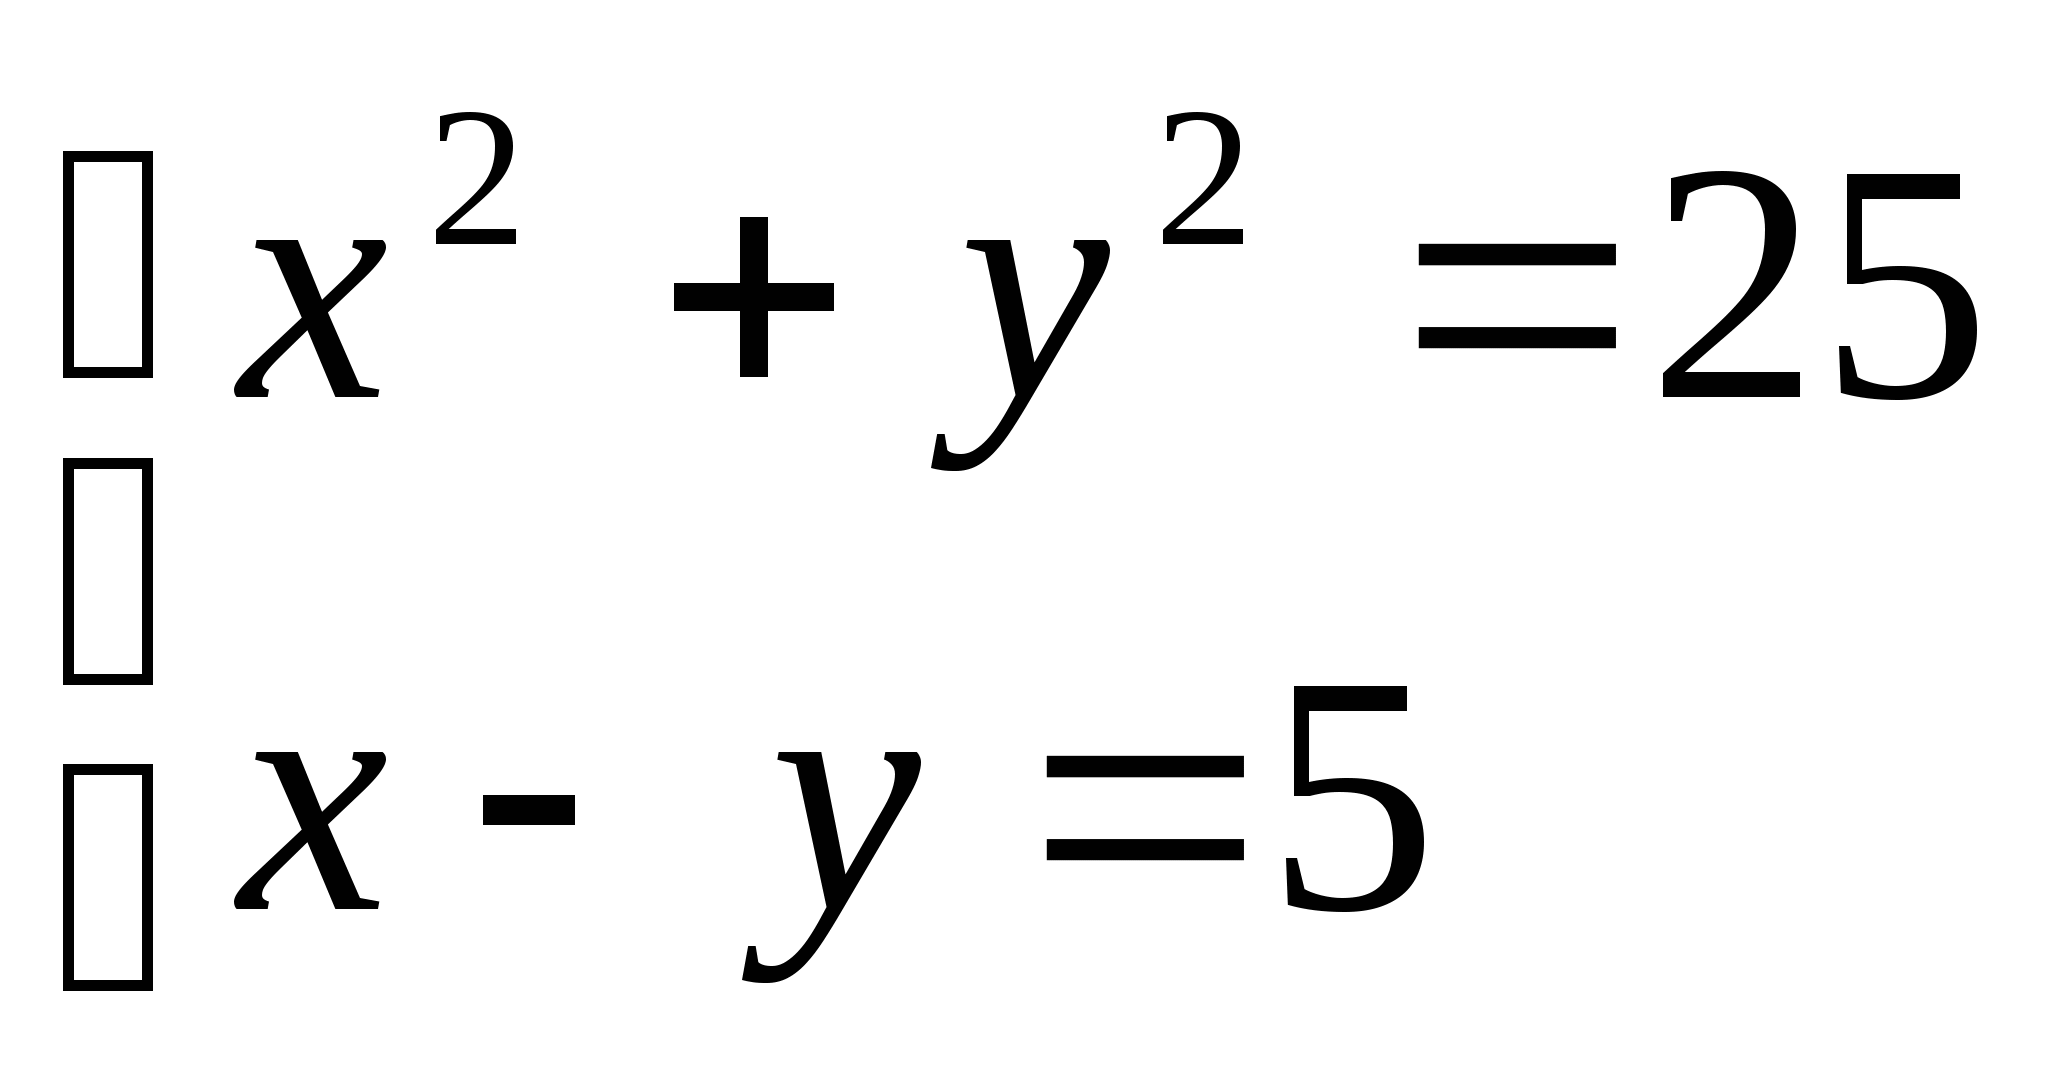 Оценочный лист по алгебре « Система двух уравнений с двумя неизвестными» (9 класс)